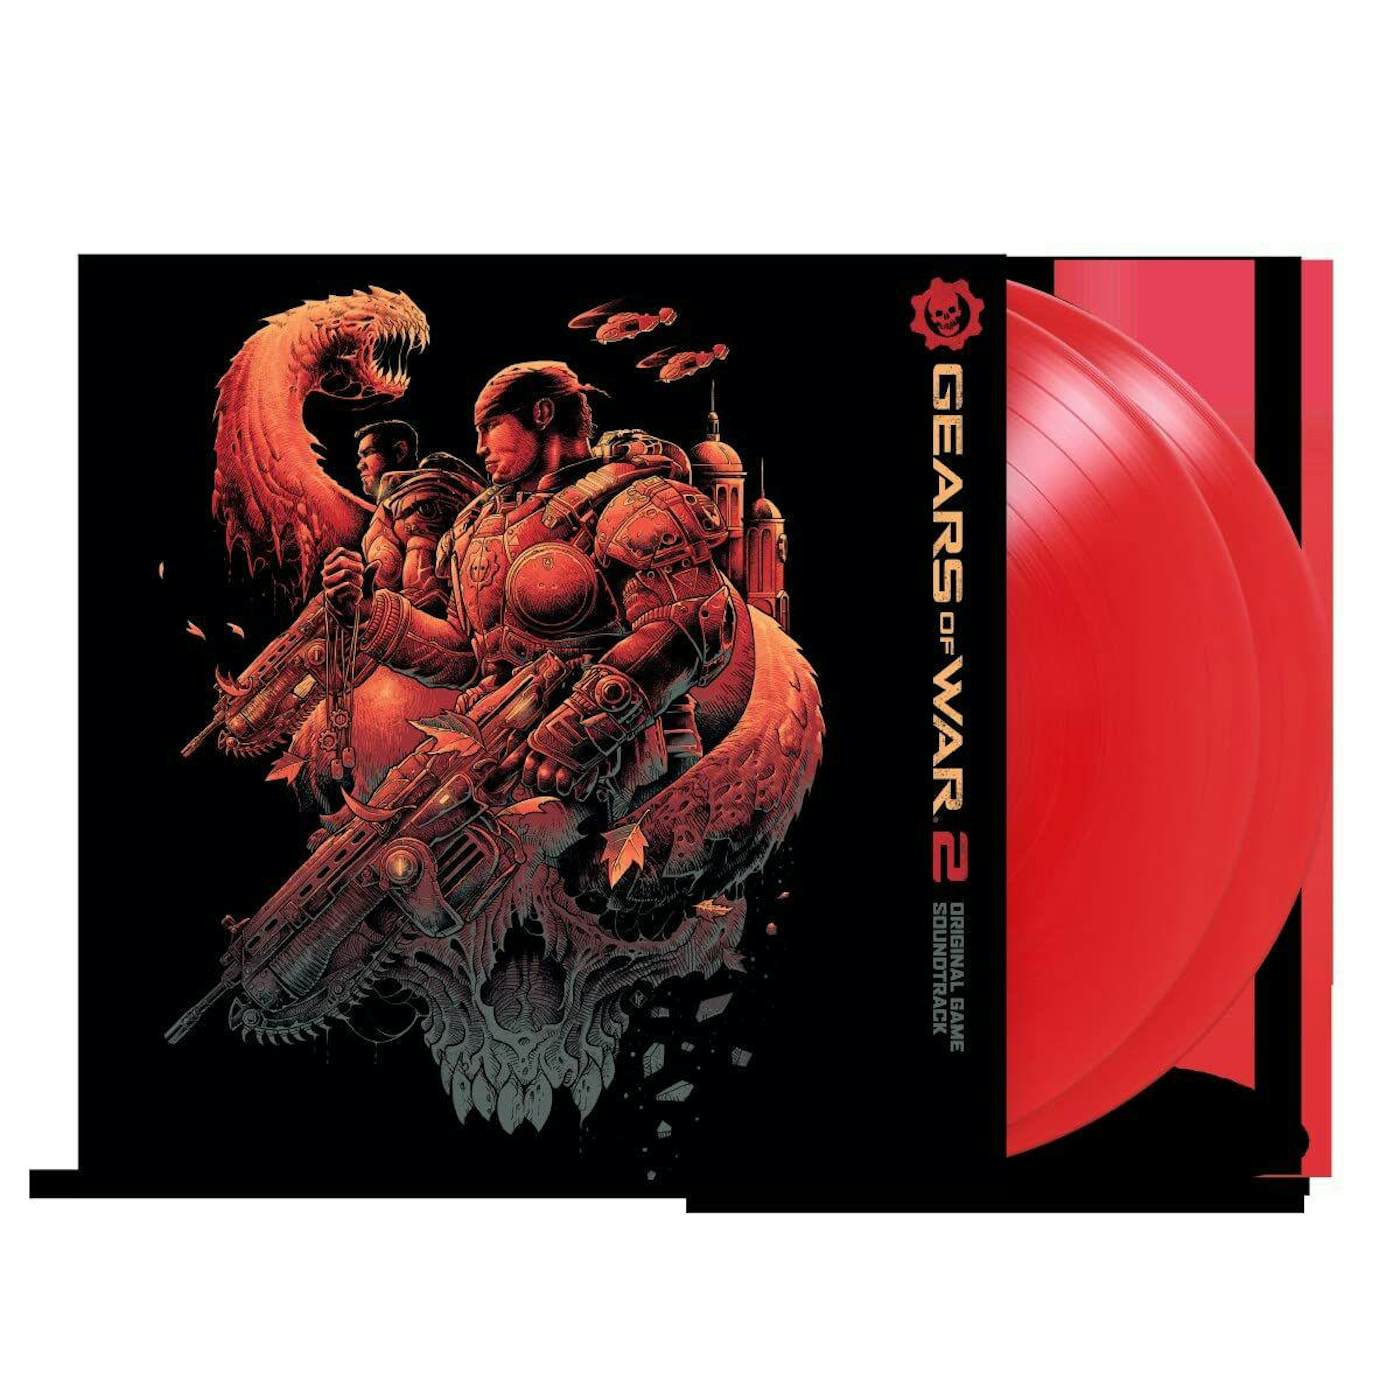 Steve Jablonsky Gears of War 2 Original Soundtrack (2LP/180g/Red vinyl)Record